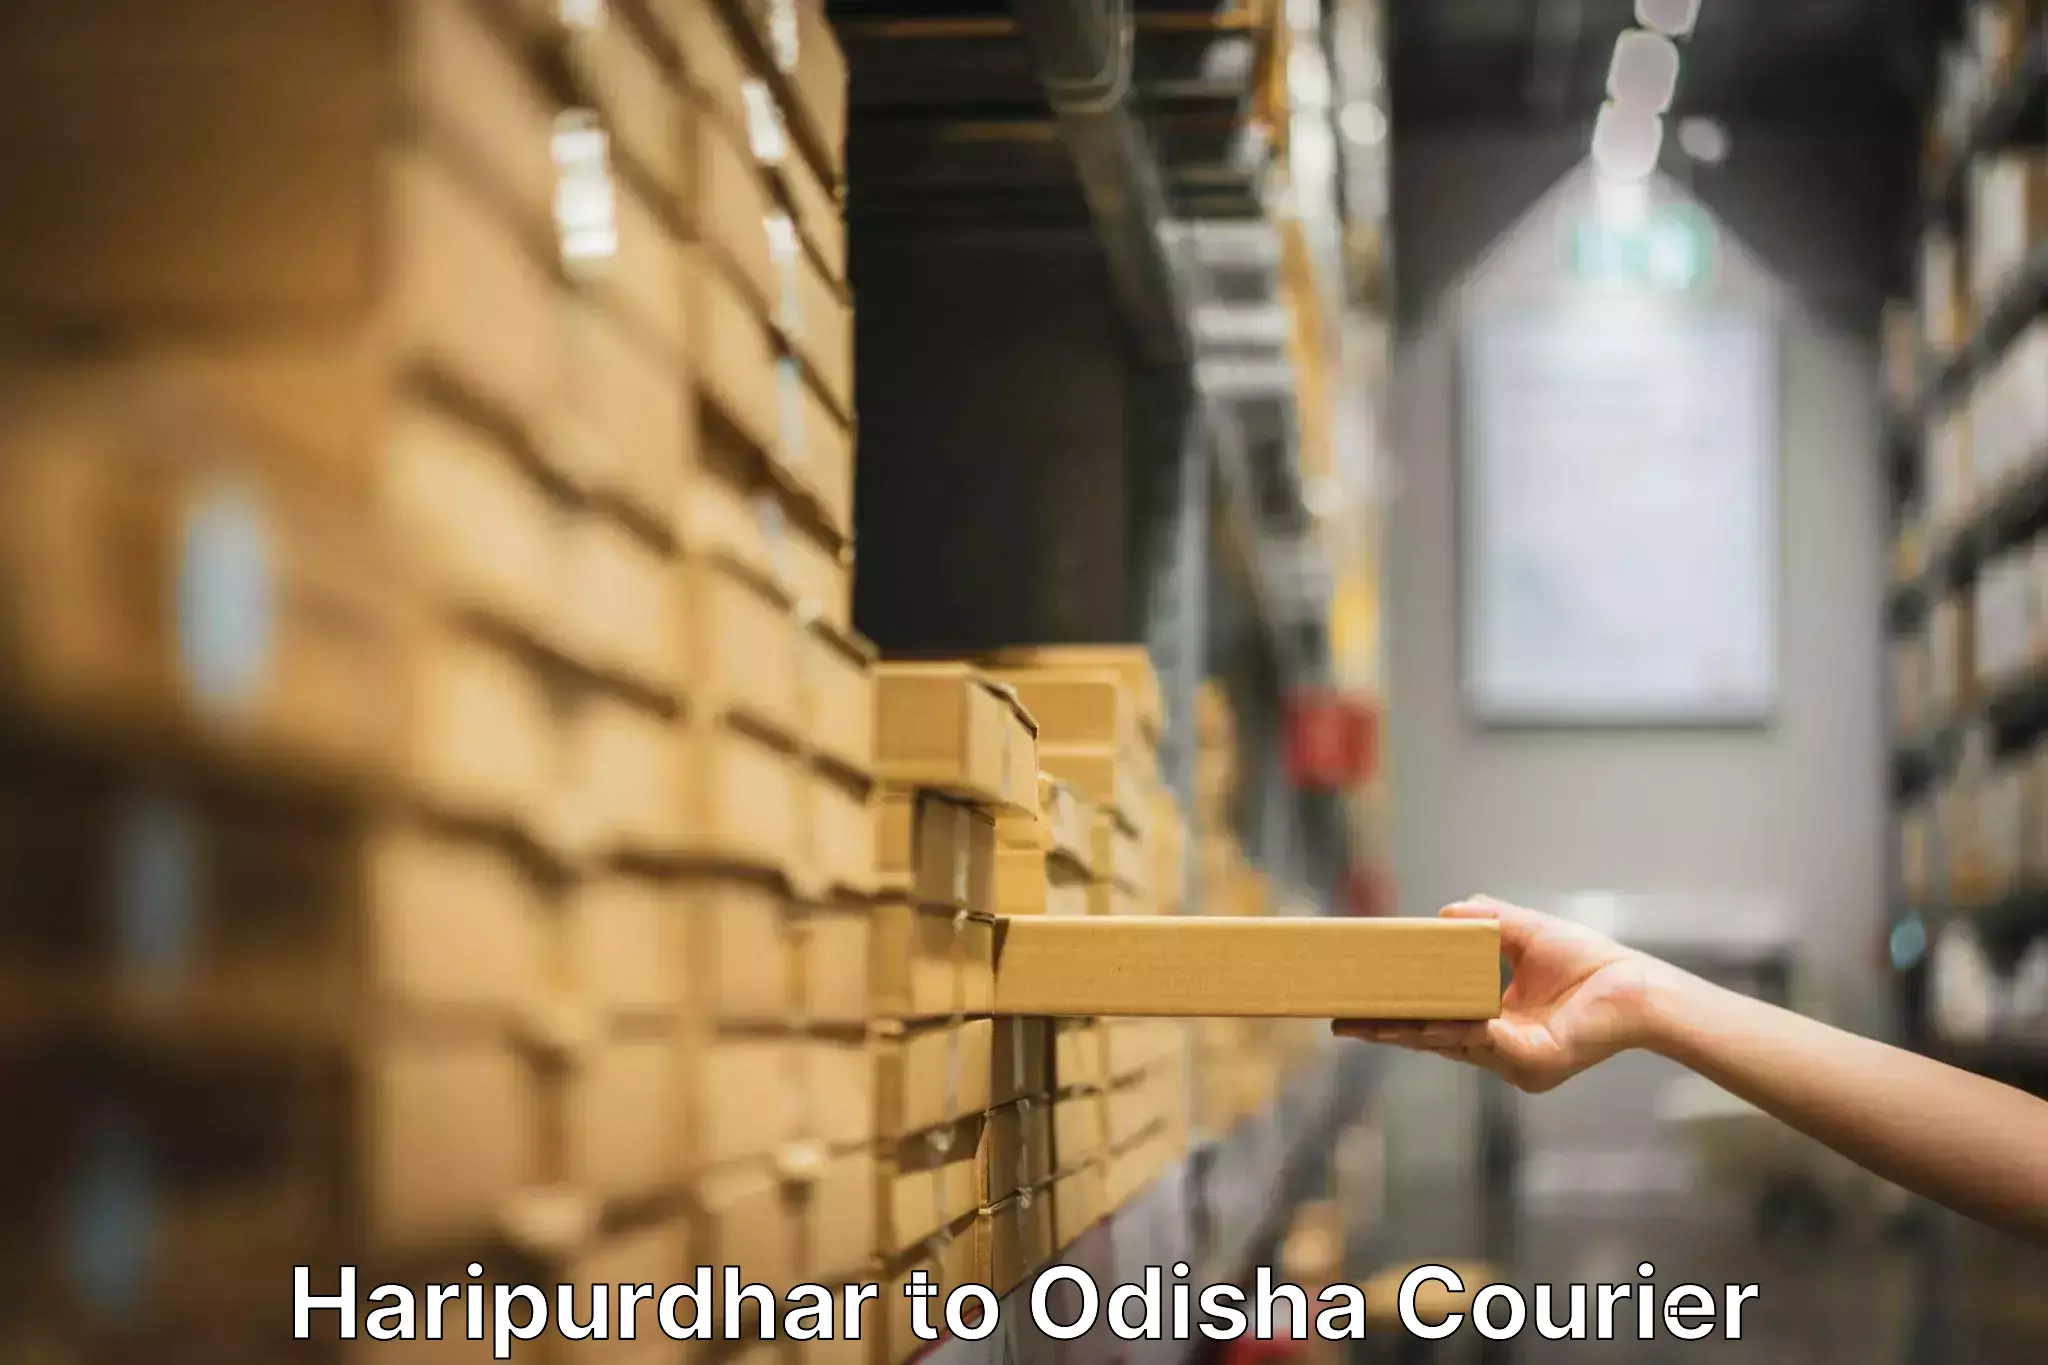 Furniture moving experts Haripurdhar to Agarpada